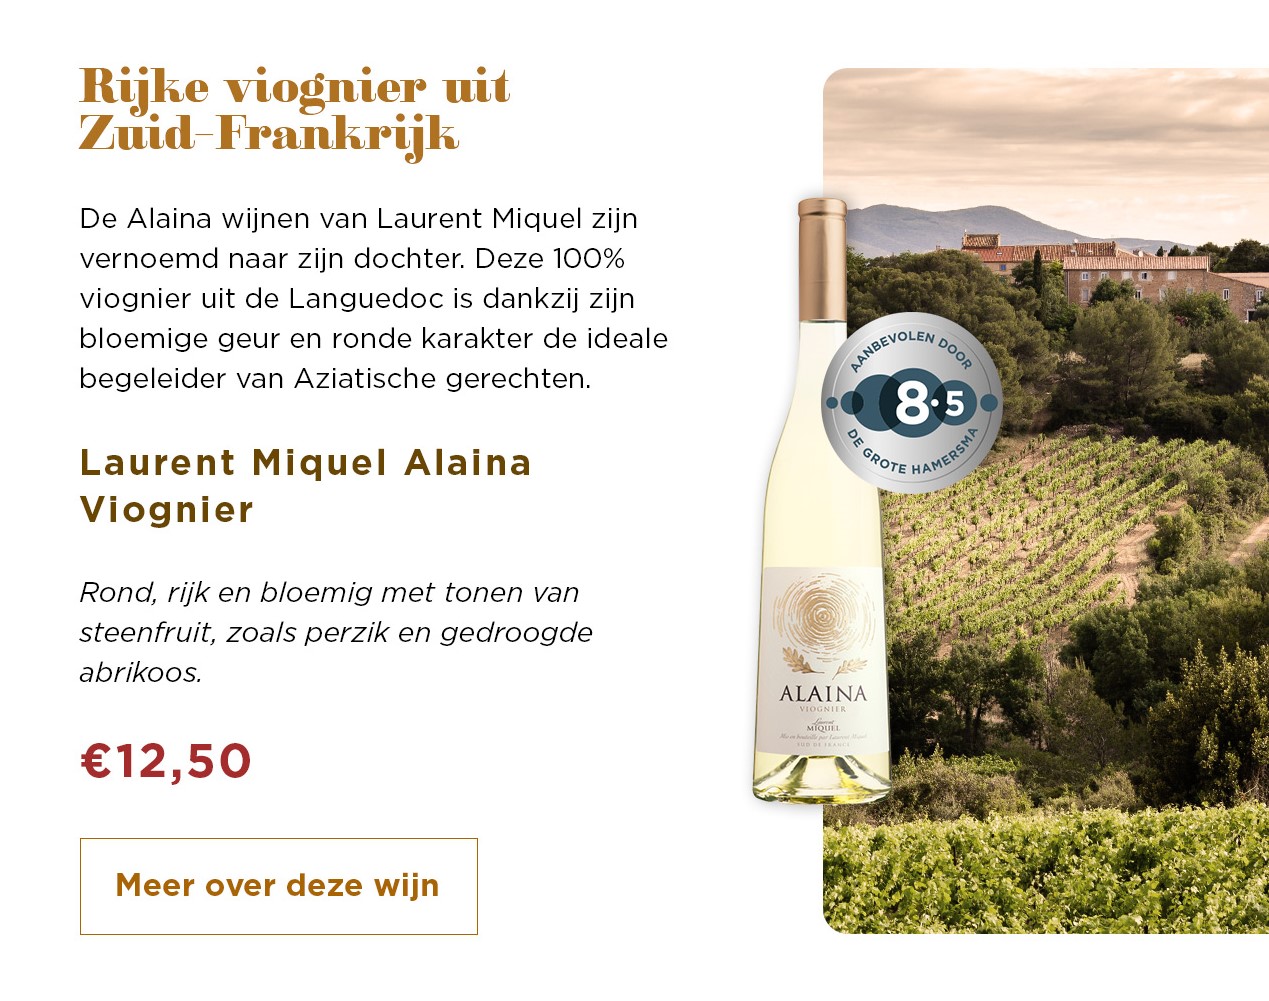 Rijke viognier uit Zuid-Frankrijk | Laurent Miquel Alaina Viognier voor € 12,50 | Meer over deze wijn